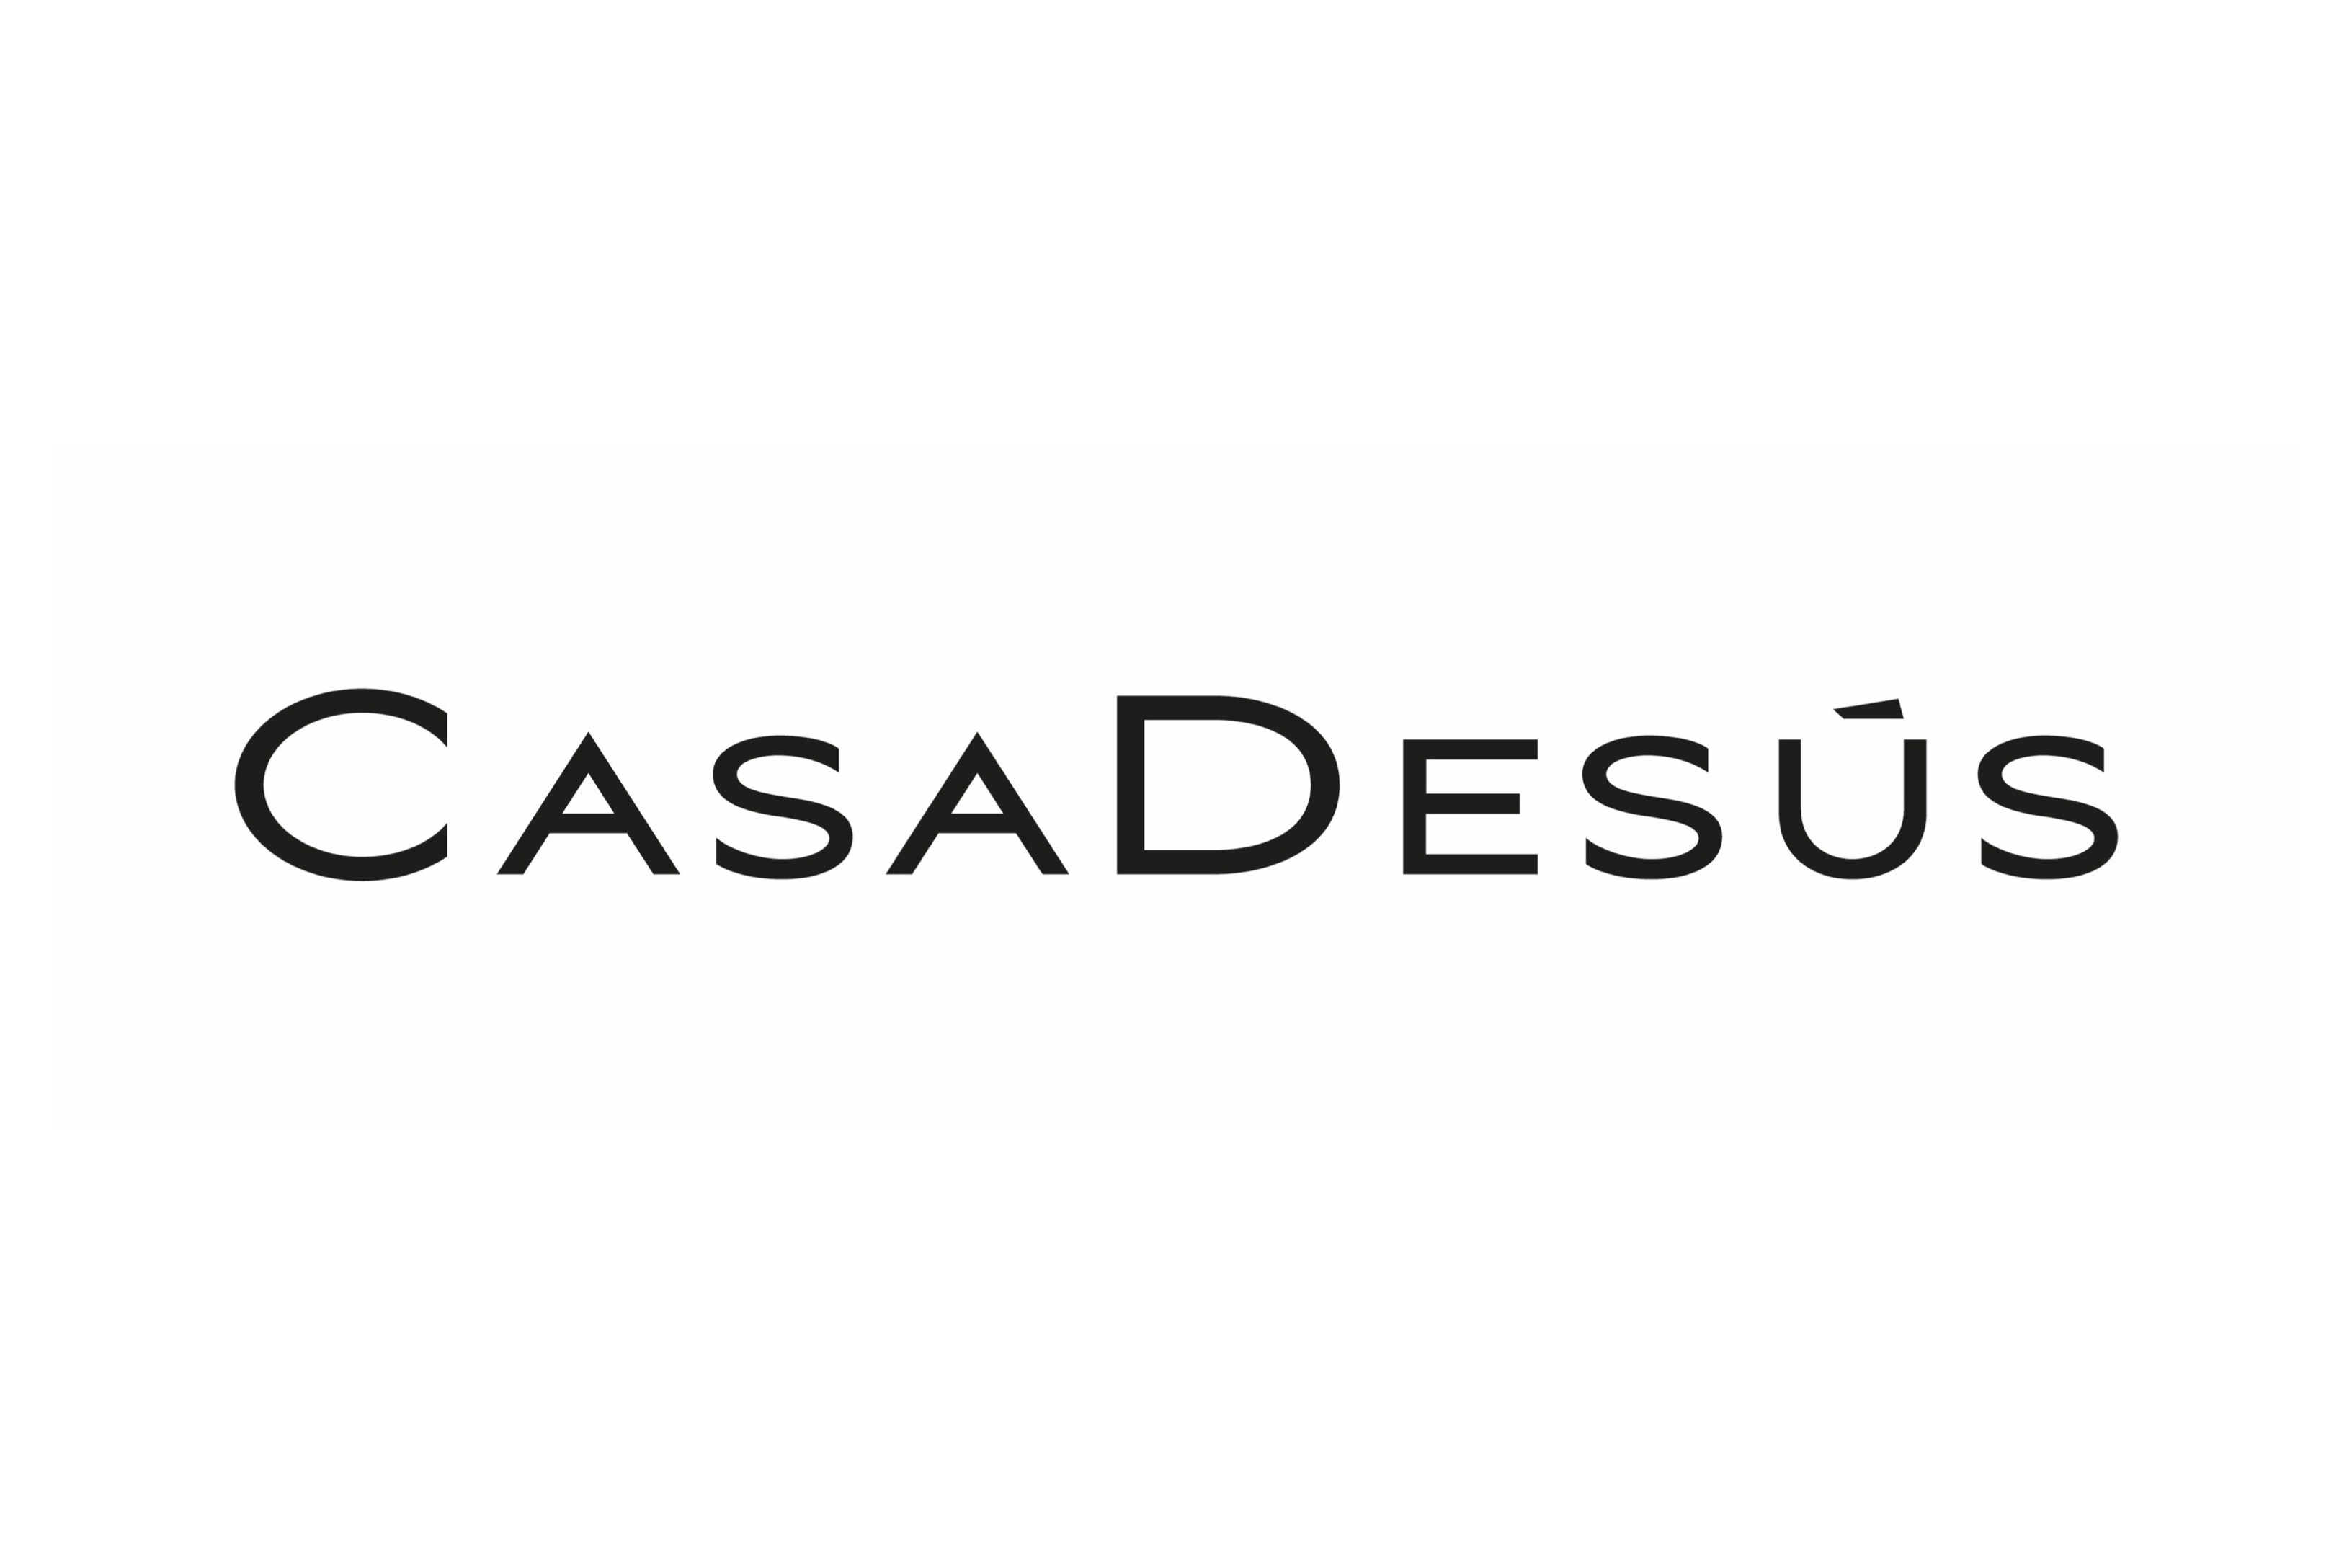 Casadesus